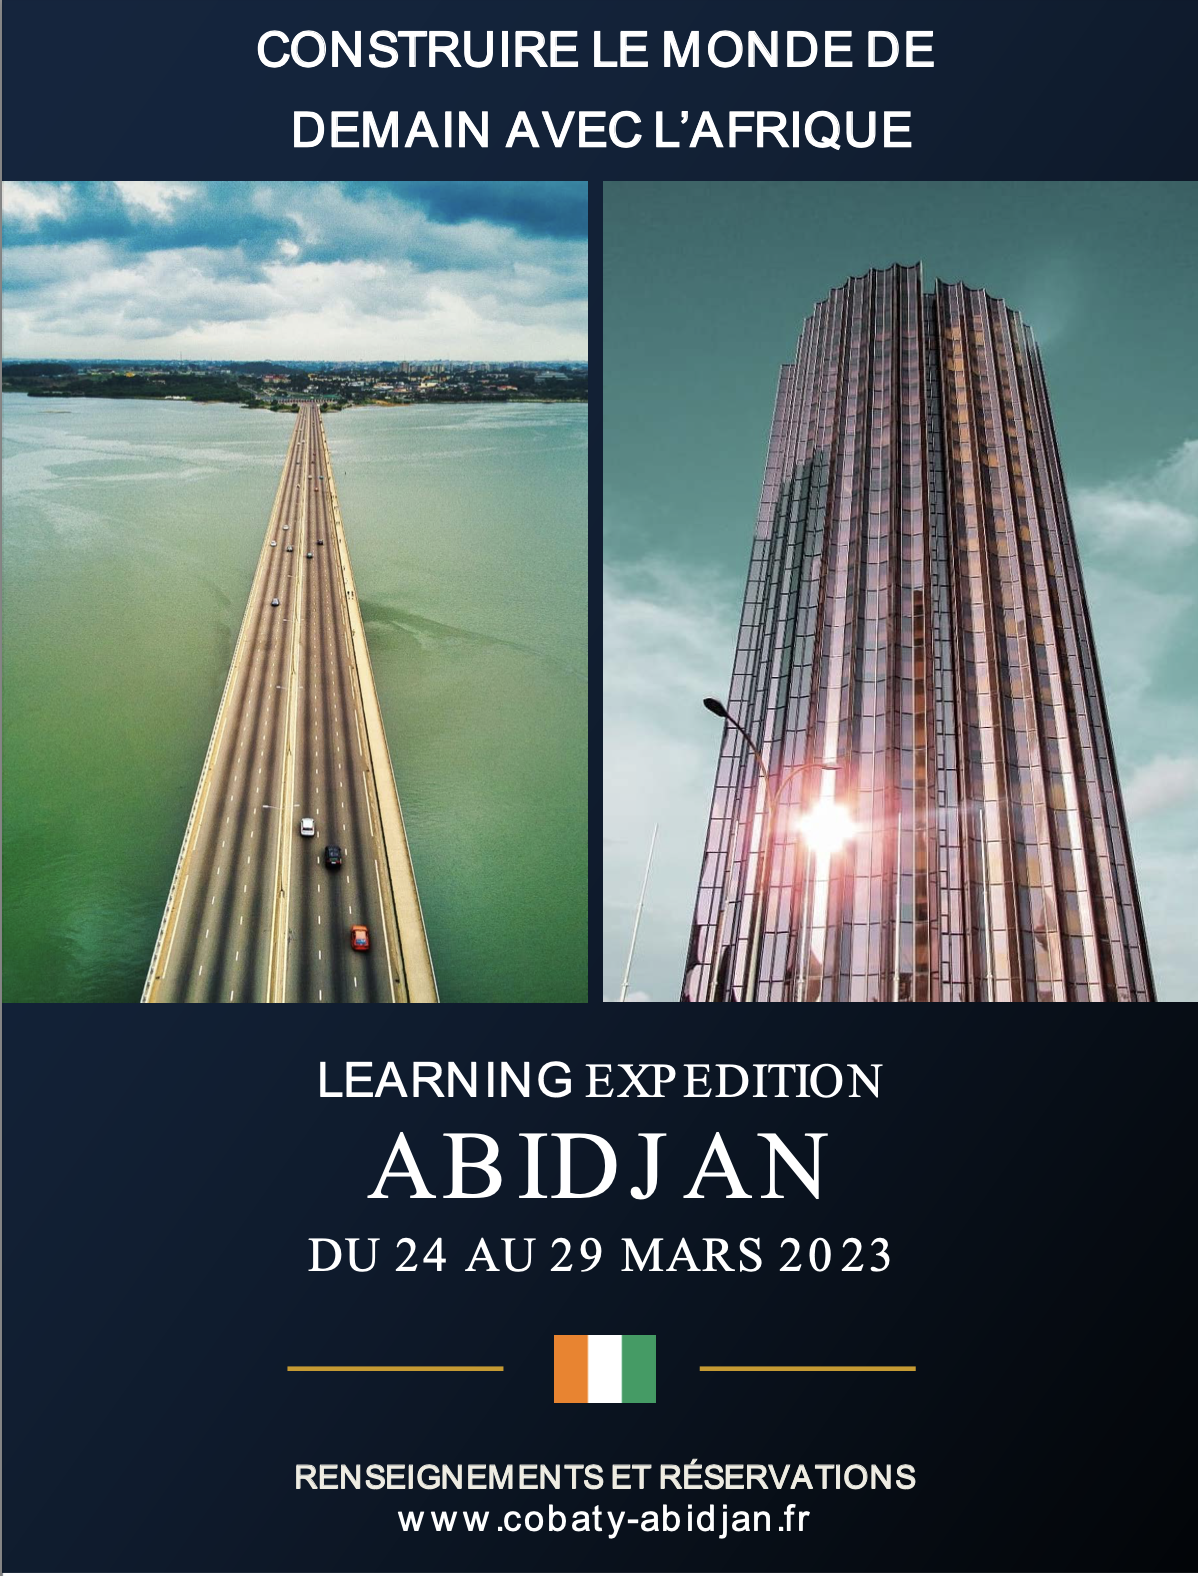 Rencontre à Abidjan: Construire le monde de demain avec l'Afrique